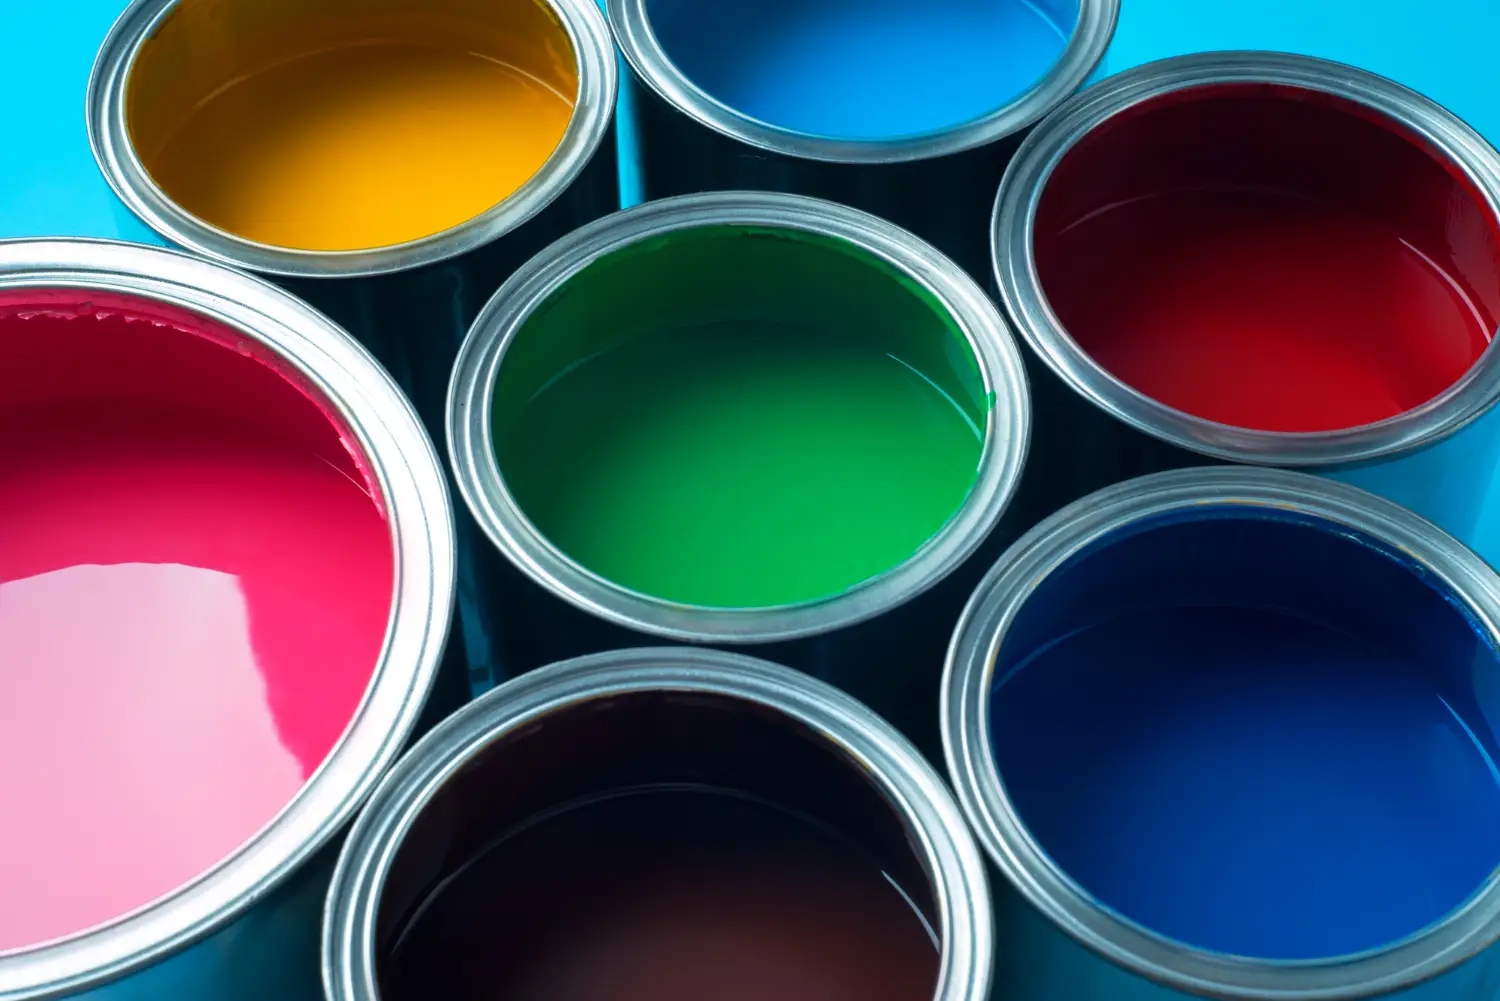 Vista superior de latas abiertas de pintura en una gama vibrante de colores, incluyendo amarillo, rosa, verde, rojo, azul oscuro y azul claro, mostrando la diversidad de opciones de colores de Megacolor.